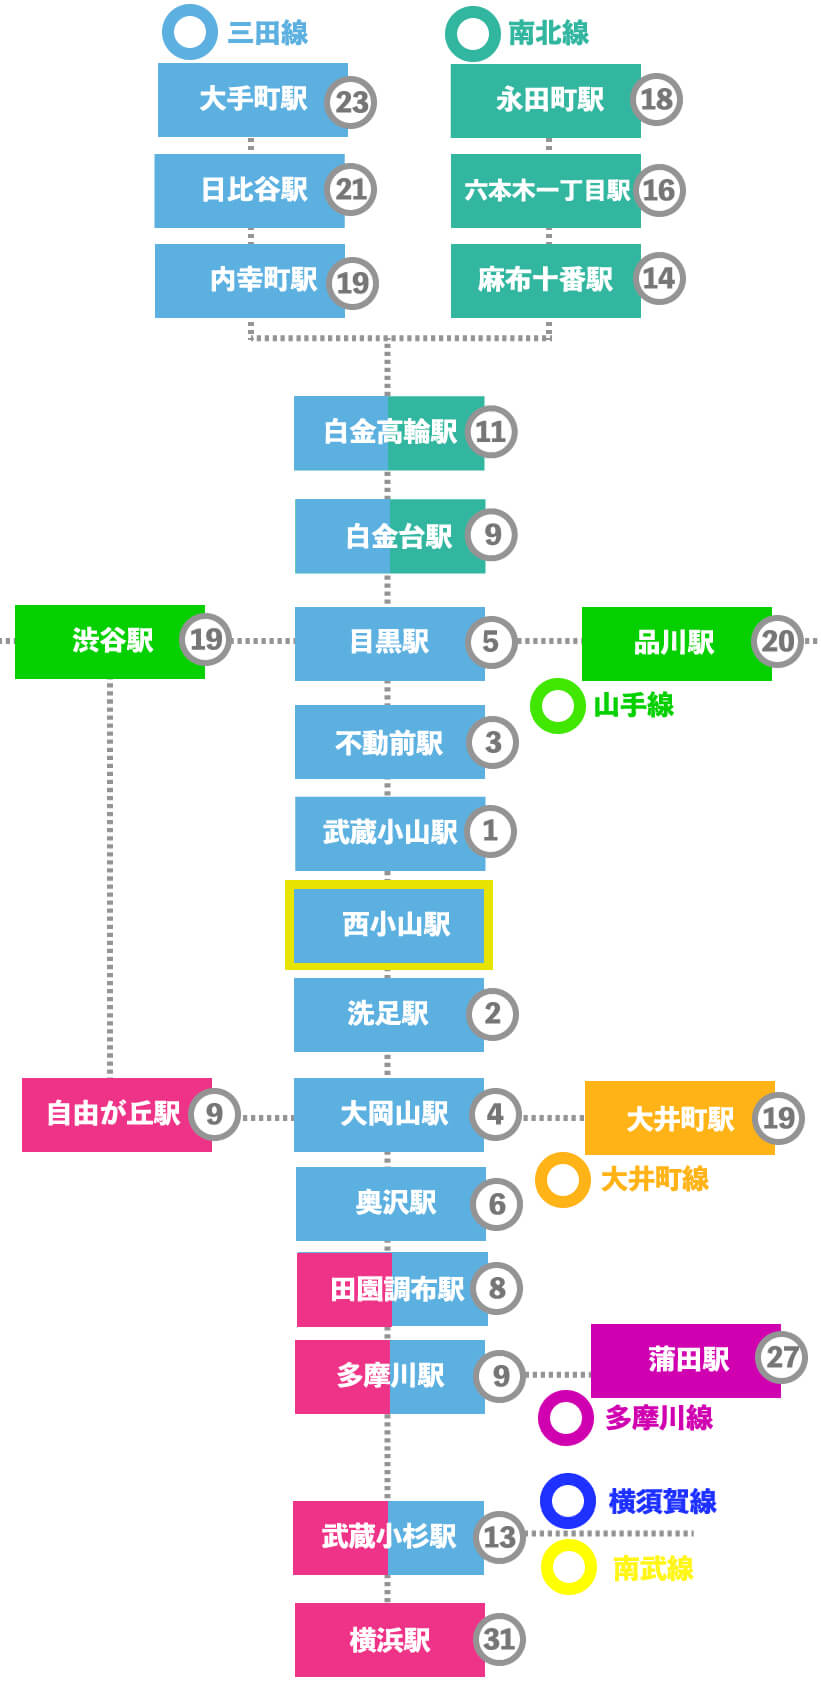 この画像は西小山駅から東急目黒線各駅への乗車時間、三田線南北線・山手線などの代表駅への乗車時間をまとめた表です。